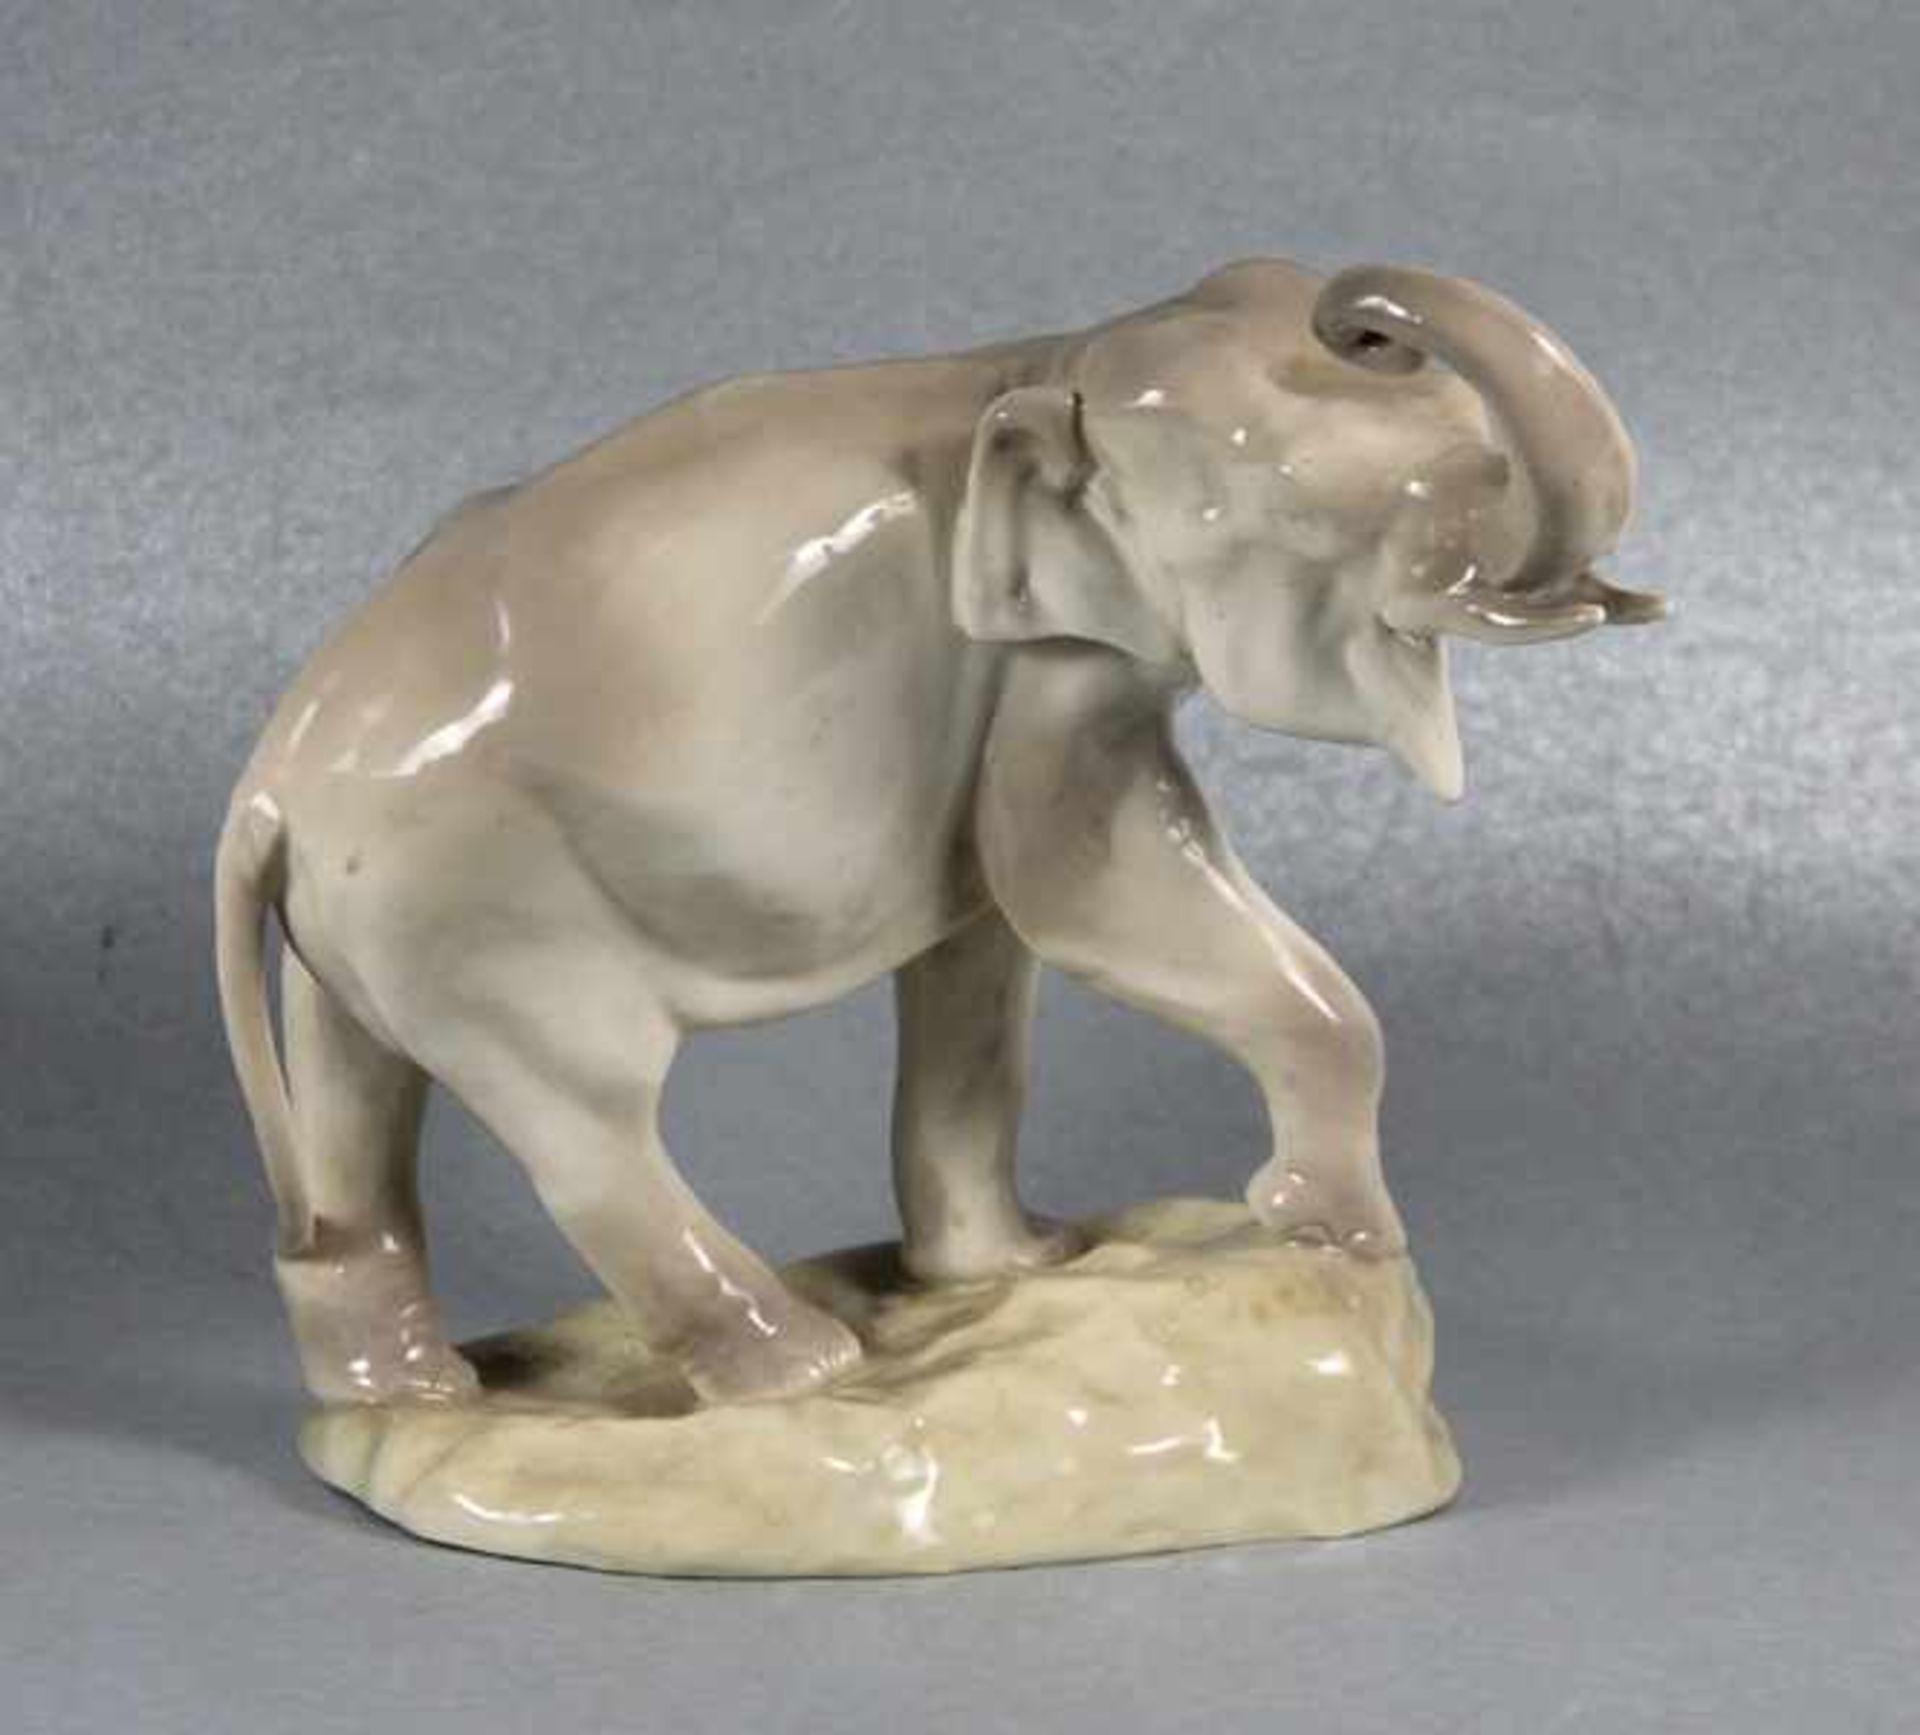 Amphora-Elephantum 1900, Imperial Amphora Turn, Keramik-Elephant mit erhobenem Rüssel,